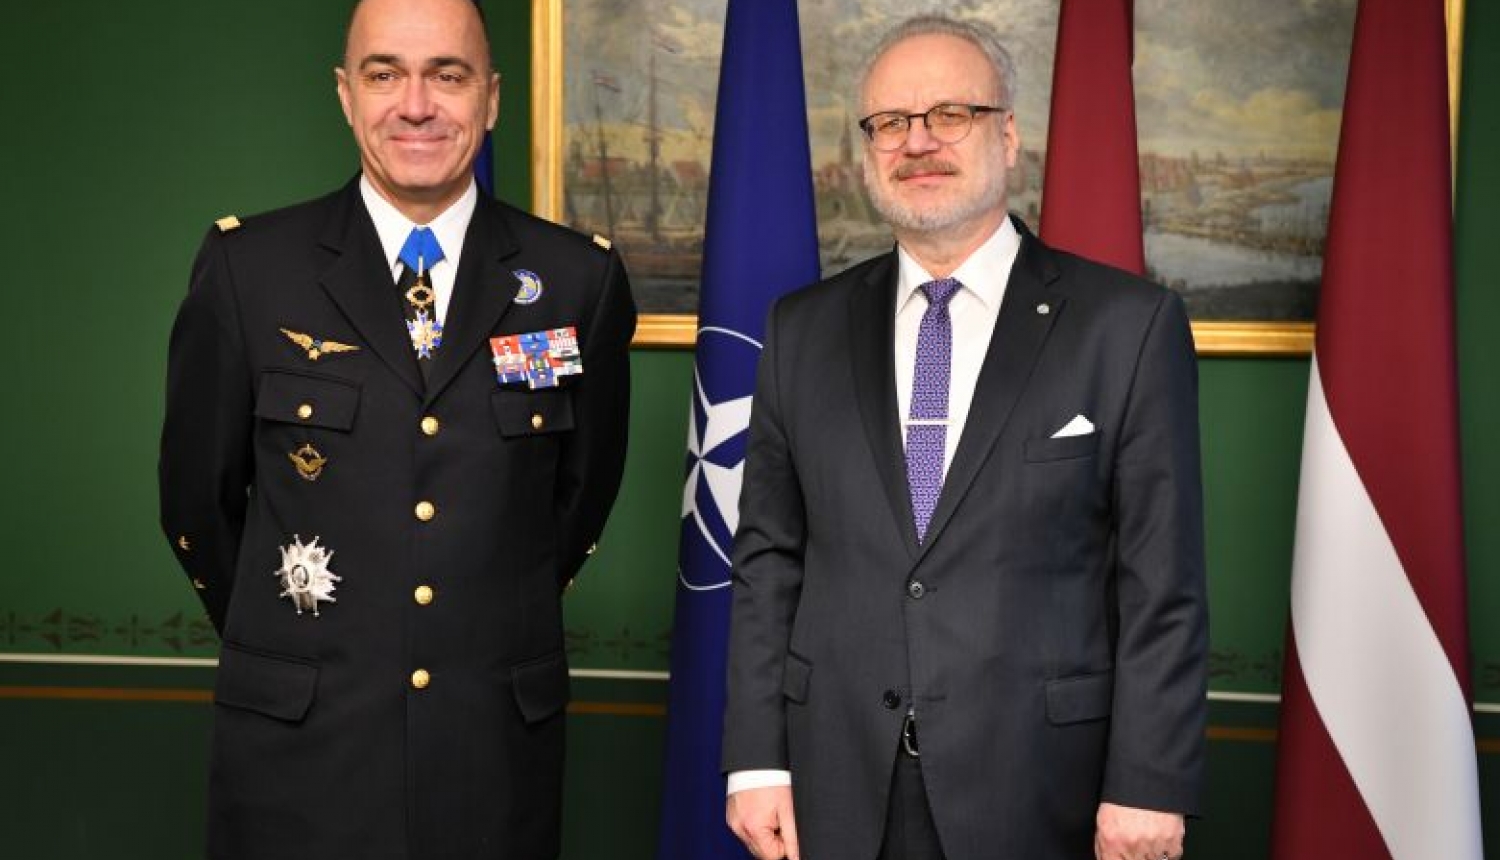 Valsts prezidents un NATO komandieris apspriežas par NATO attīstību